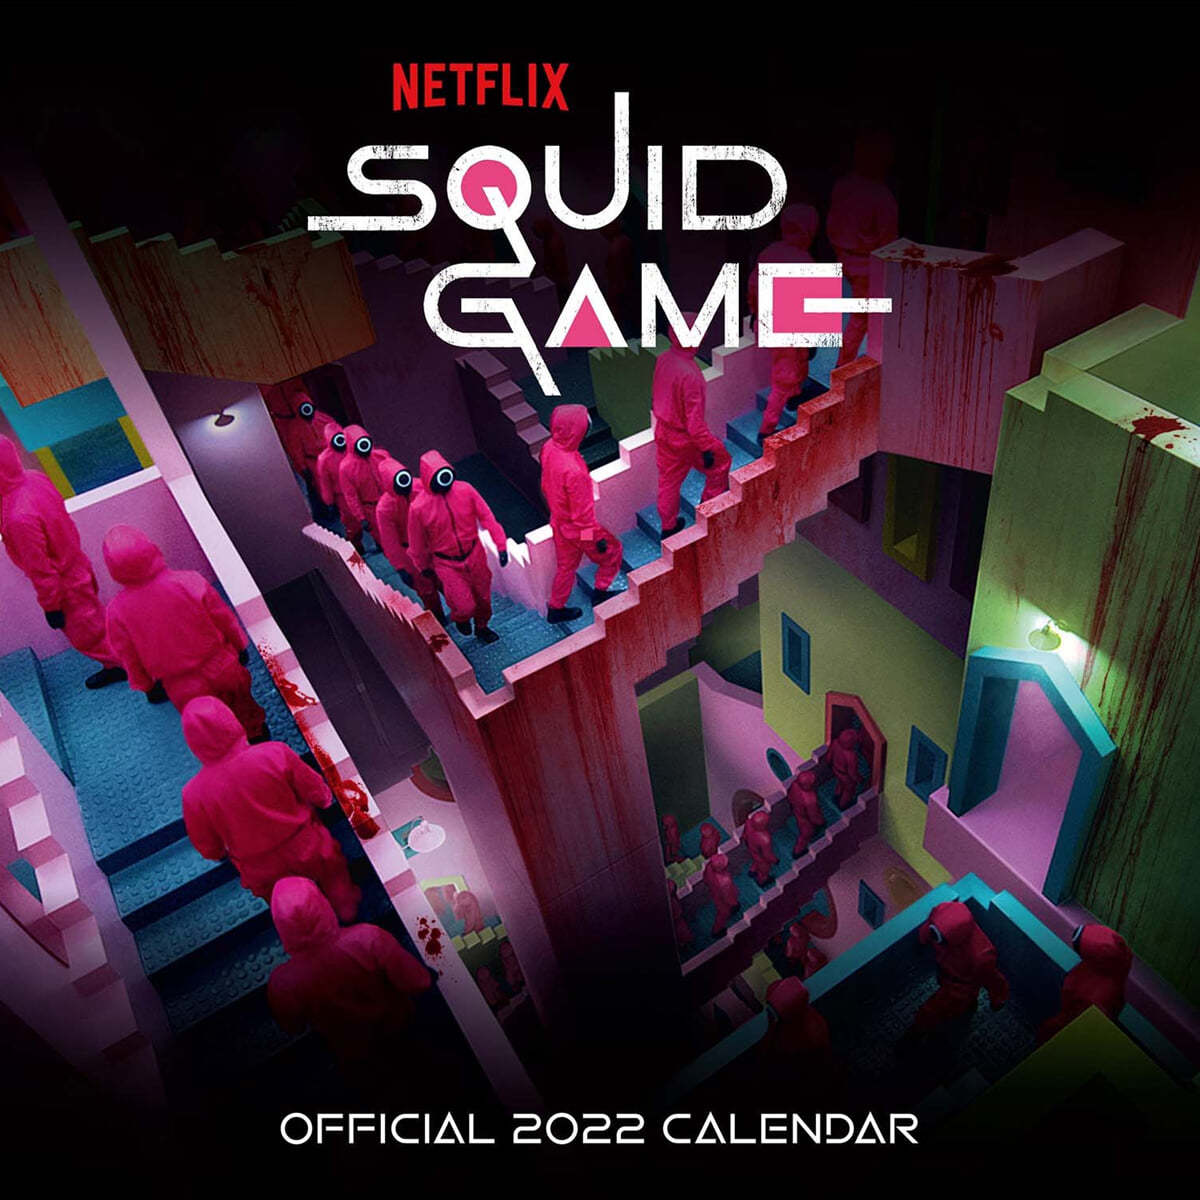 넷플릭스 &#39;오징어게임&#39; 2022년 벽걸이 캘린더 (Official Netflix &#39;Squid Game&#39; 2022 Calendar) 